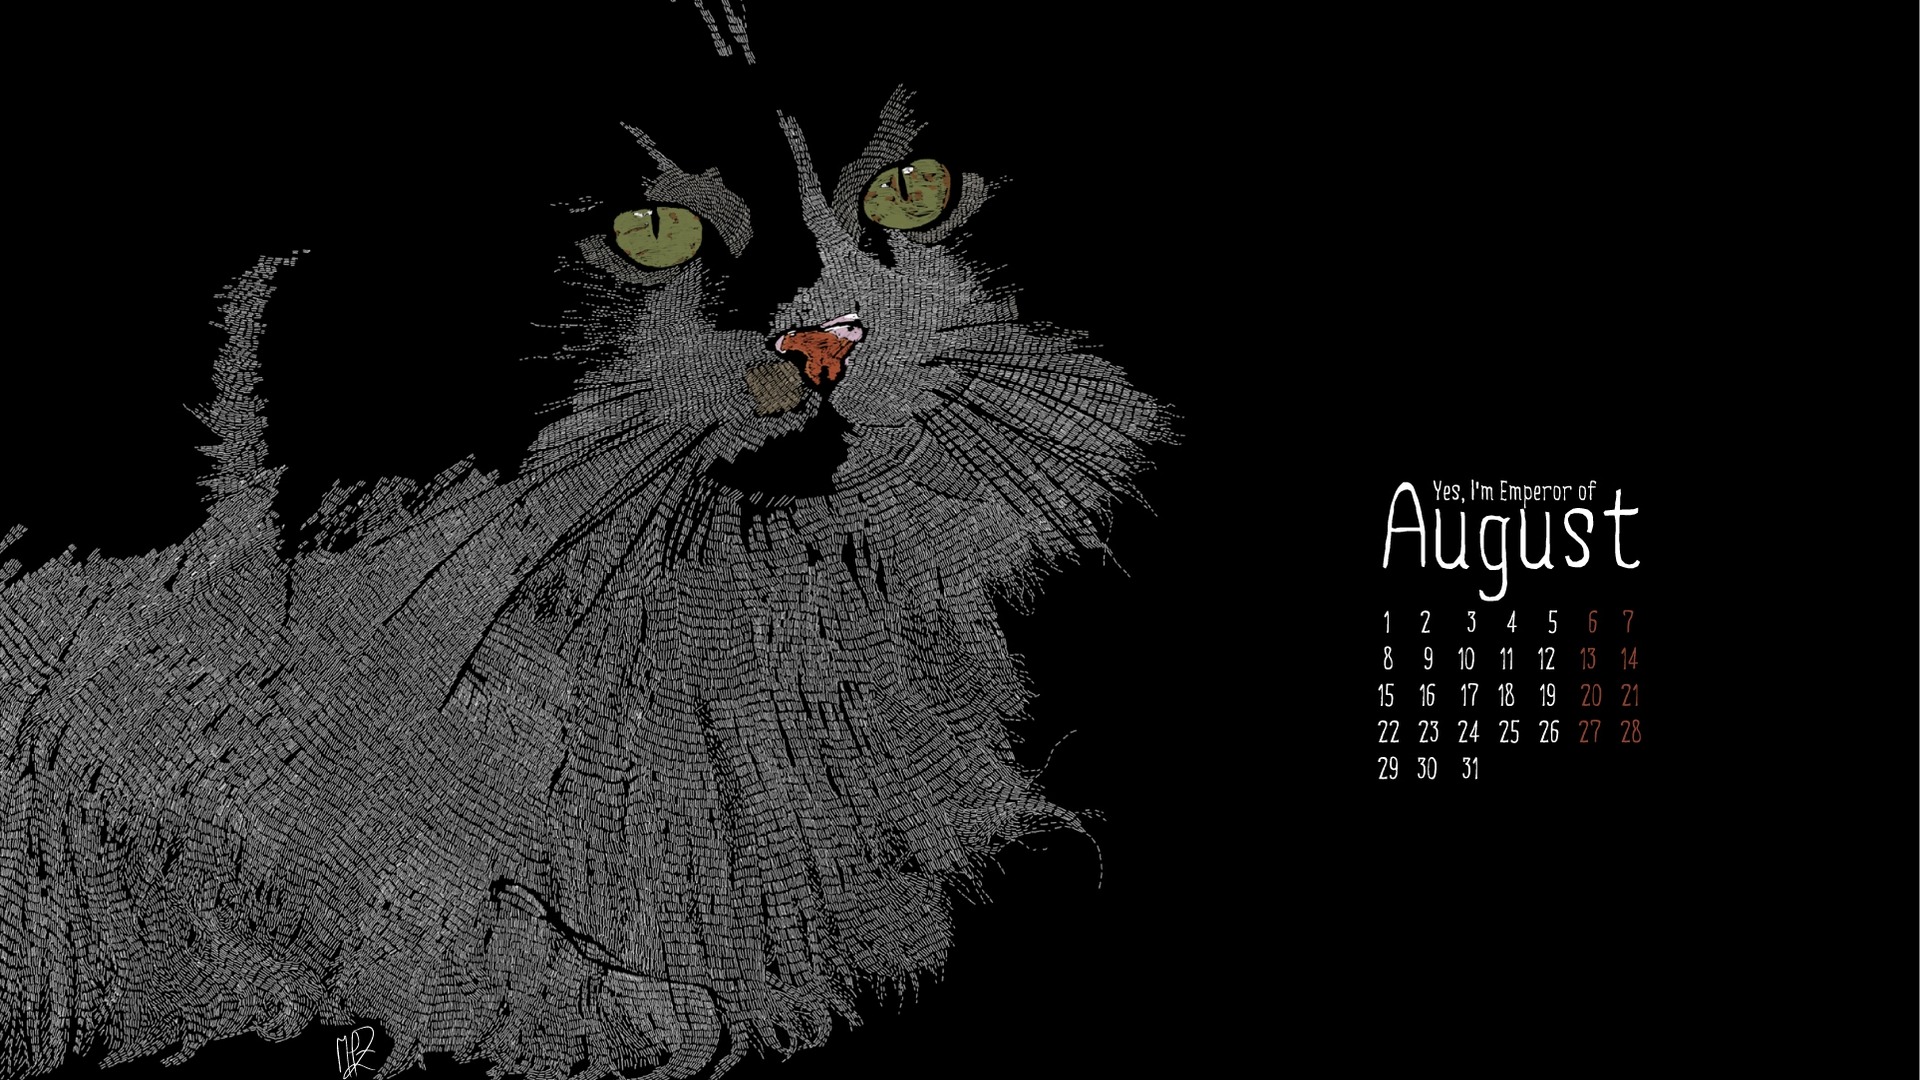 August 2011 calendar wallpaper (2) #14 - 1920x1080